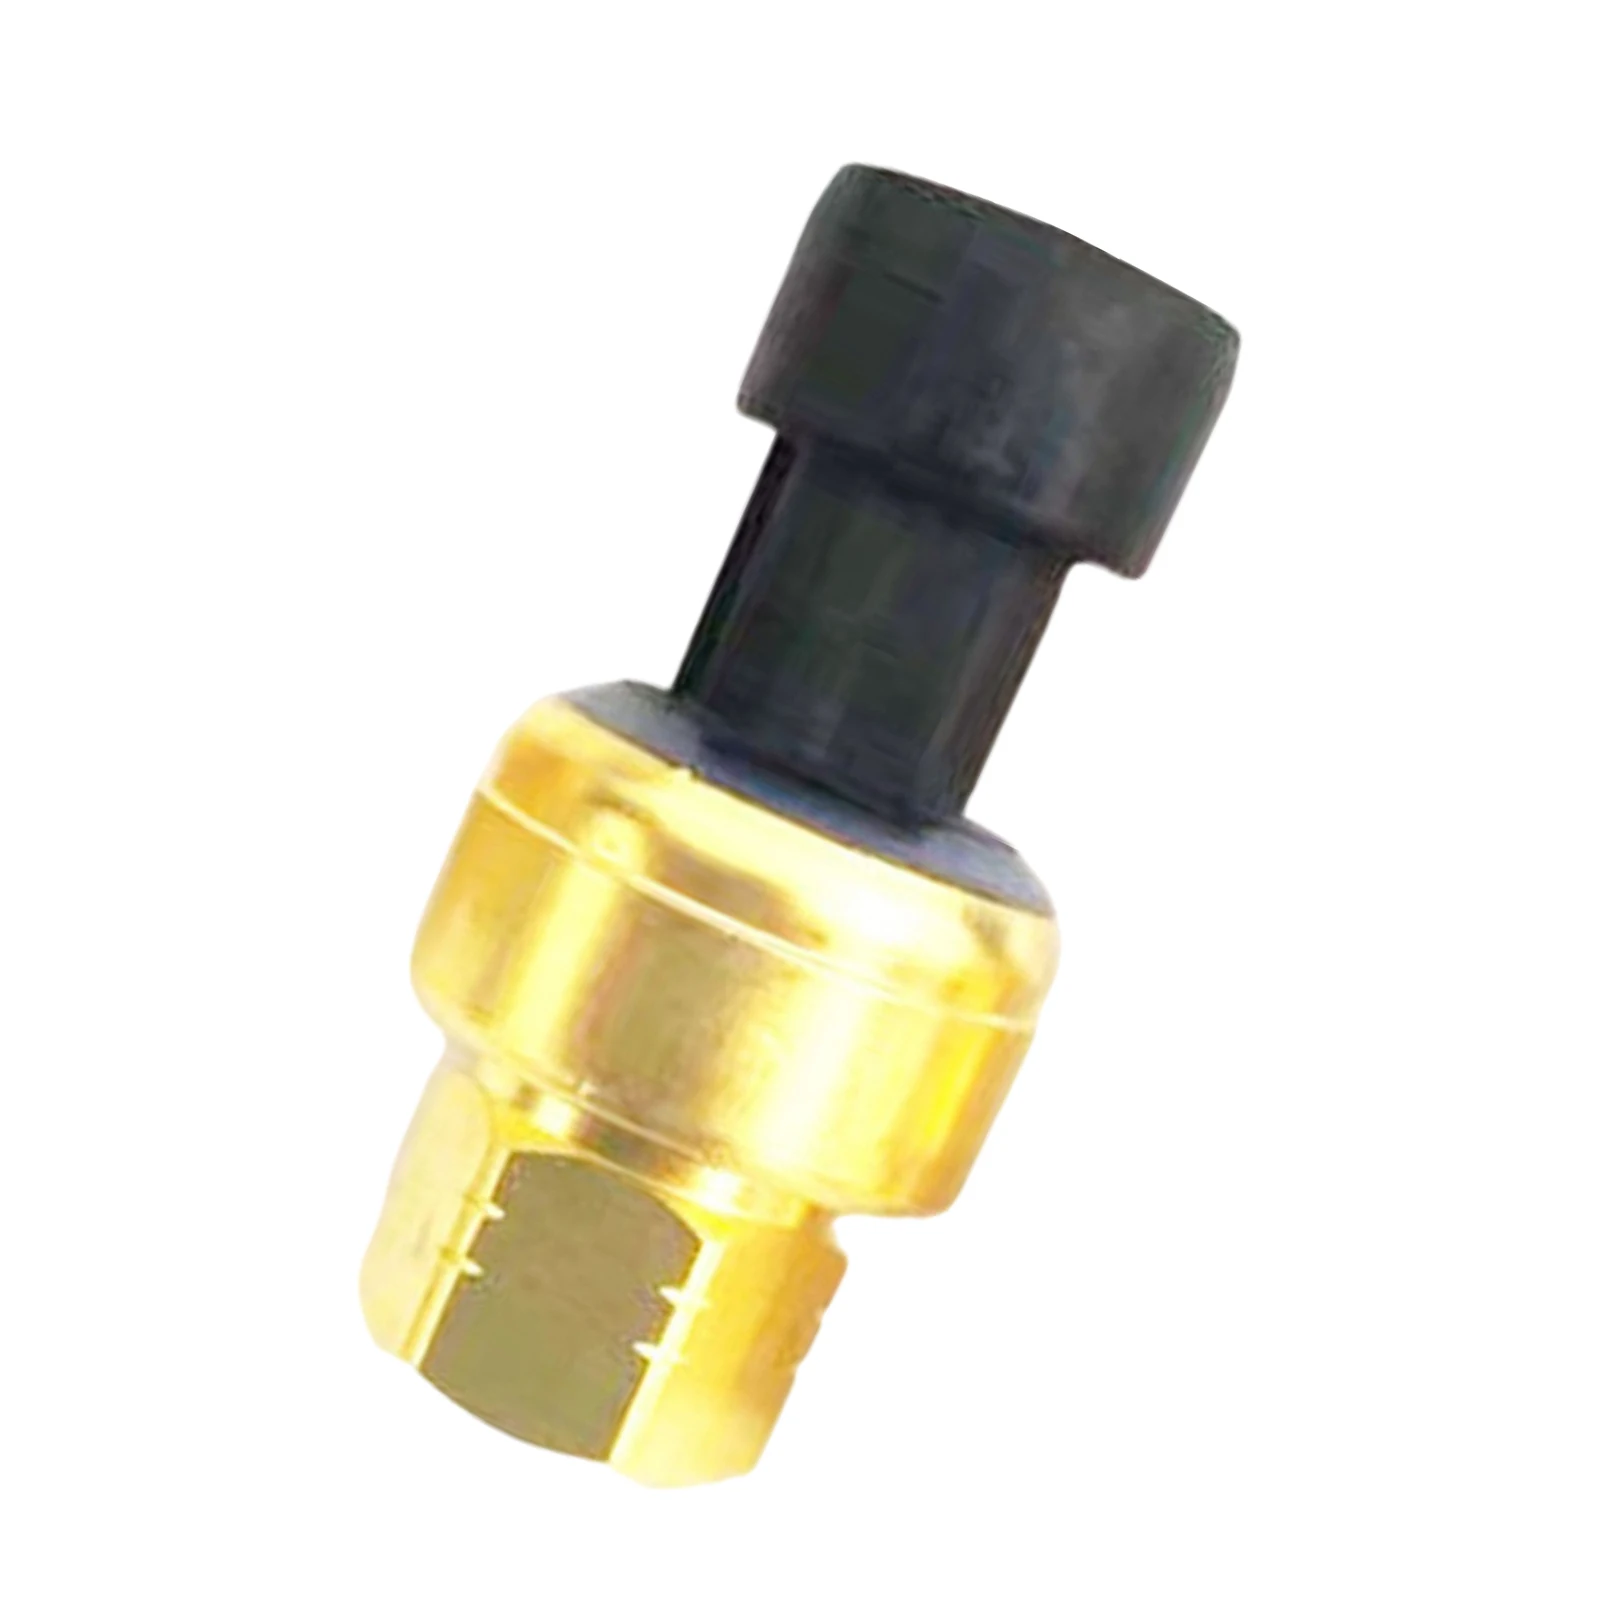 Oil Pressure Sensor 194-6724 Excavator Transducer Fit for Cat Caterpillar C15 C12